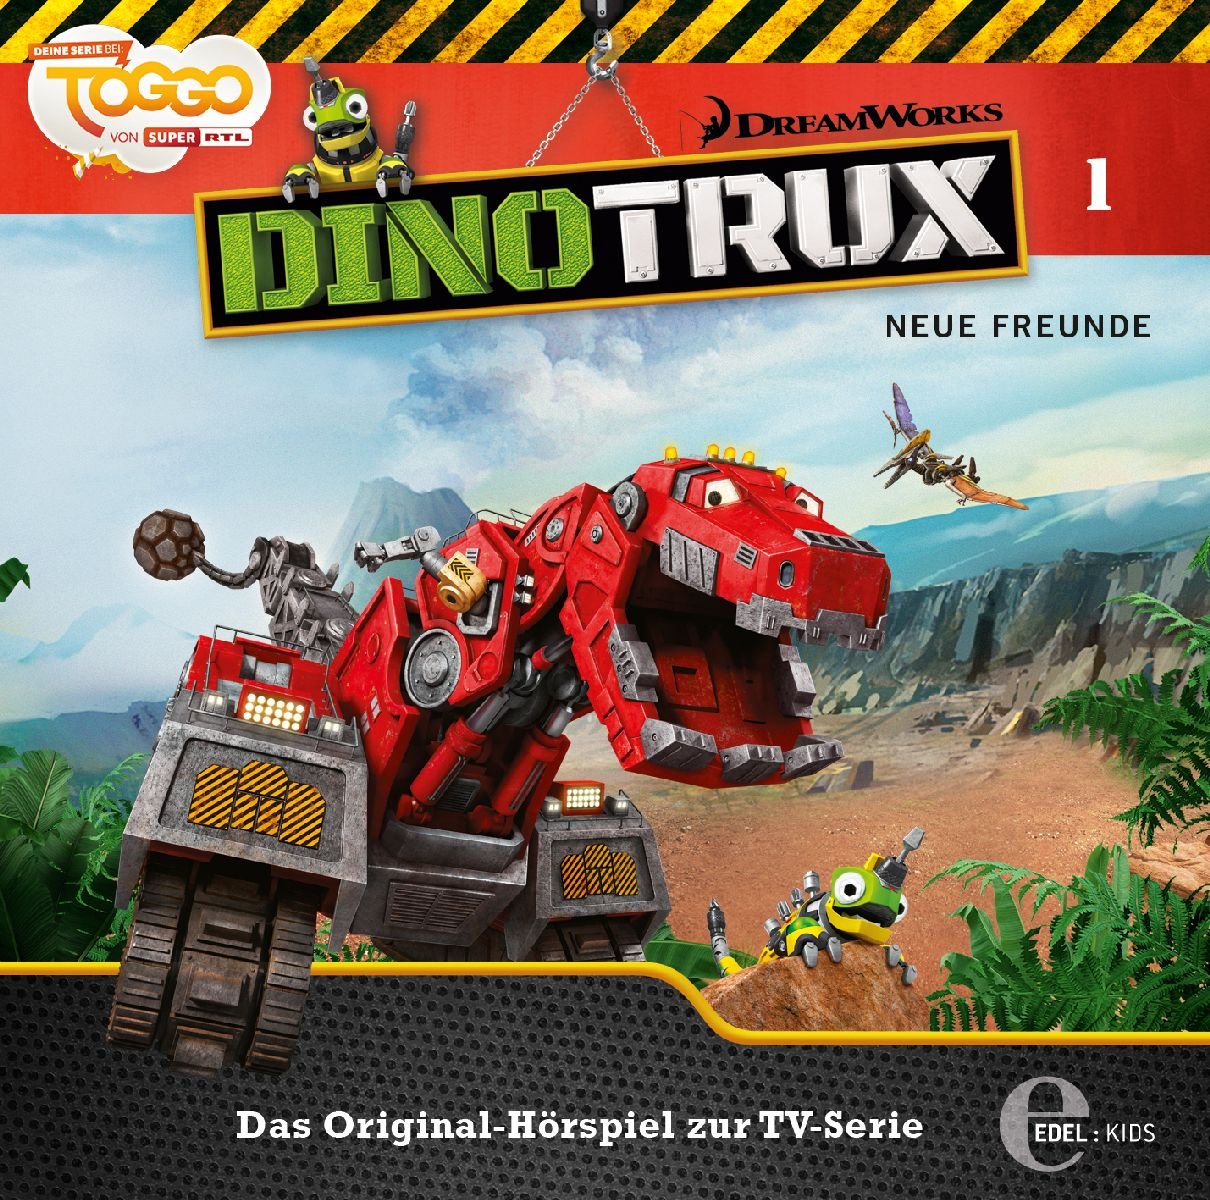 Dinotrux - Neue Freunde - Das Original-Hörspiel zur TV-Serie, Folge 1